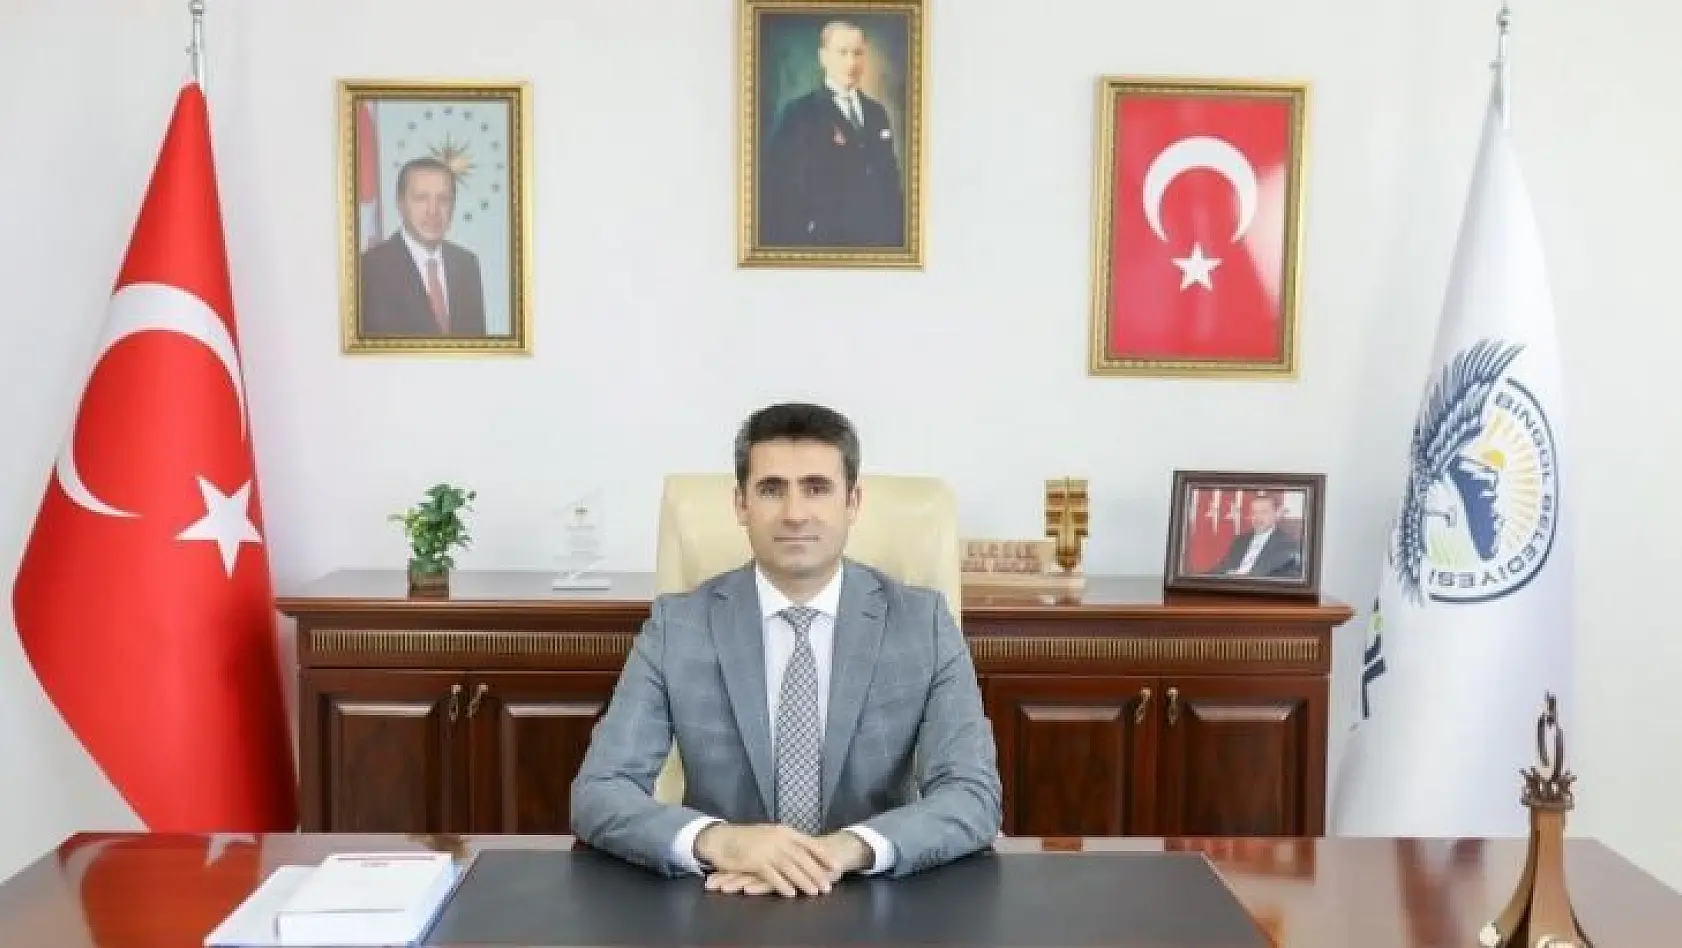 Bingöl Belediye Başkanı Erdal Arıkan, korona virüse yakalandı